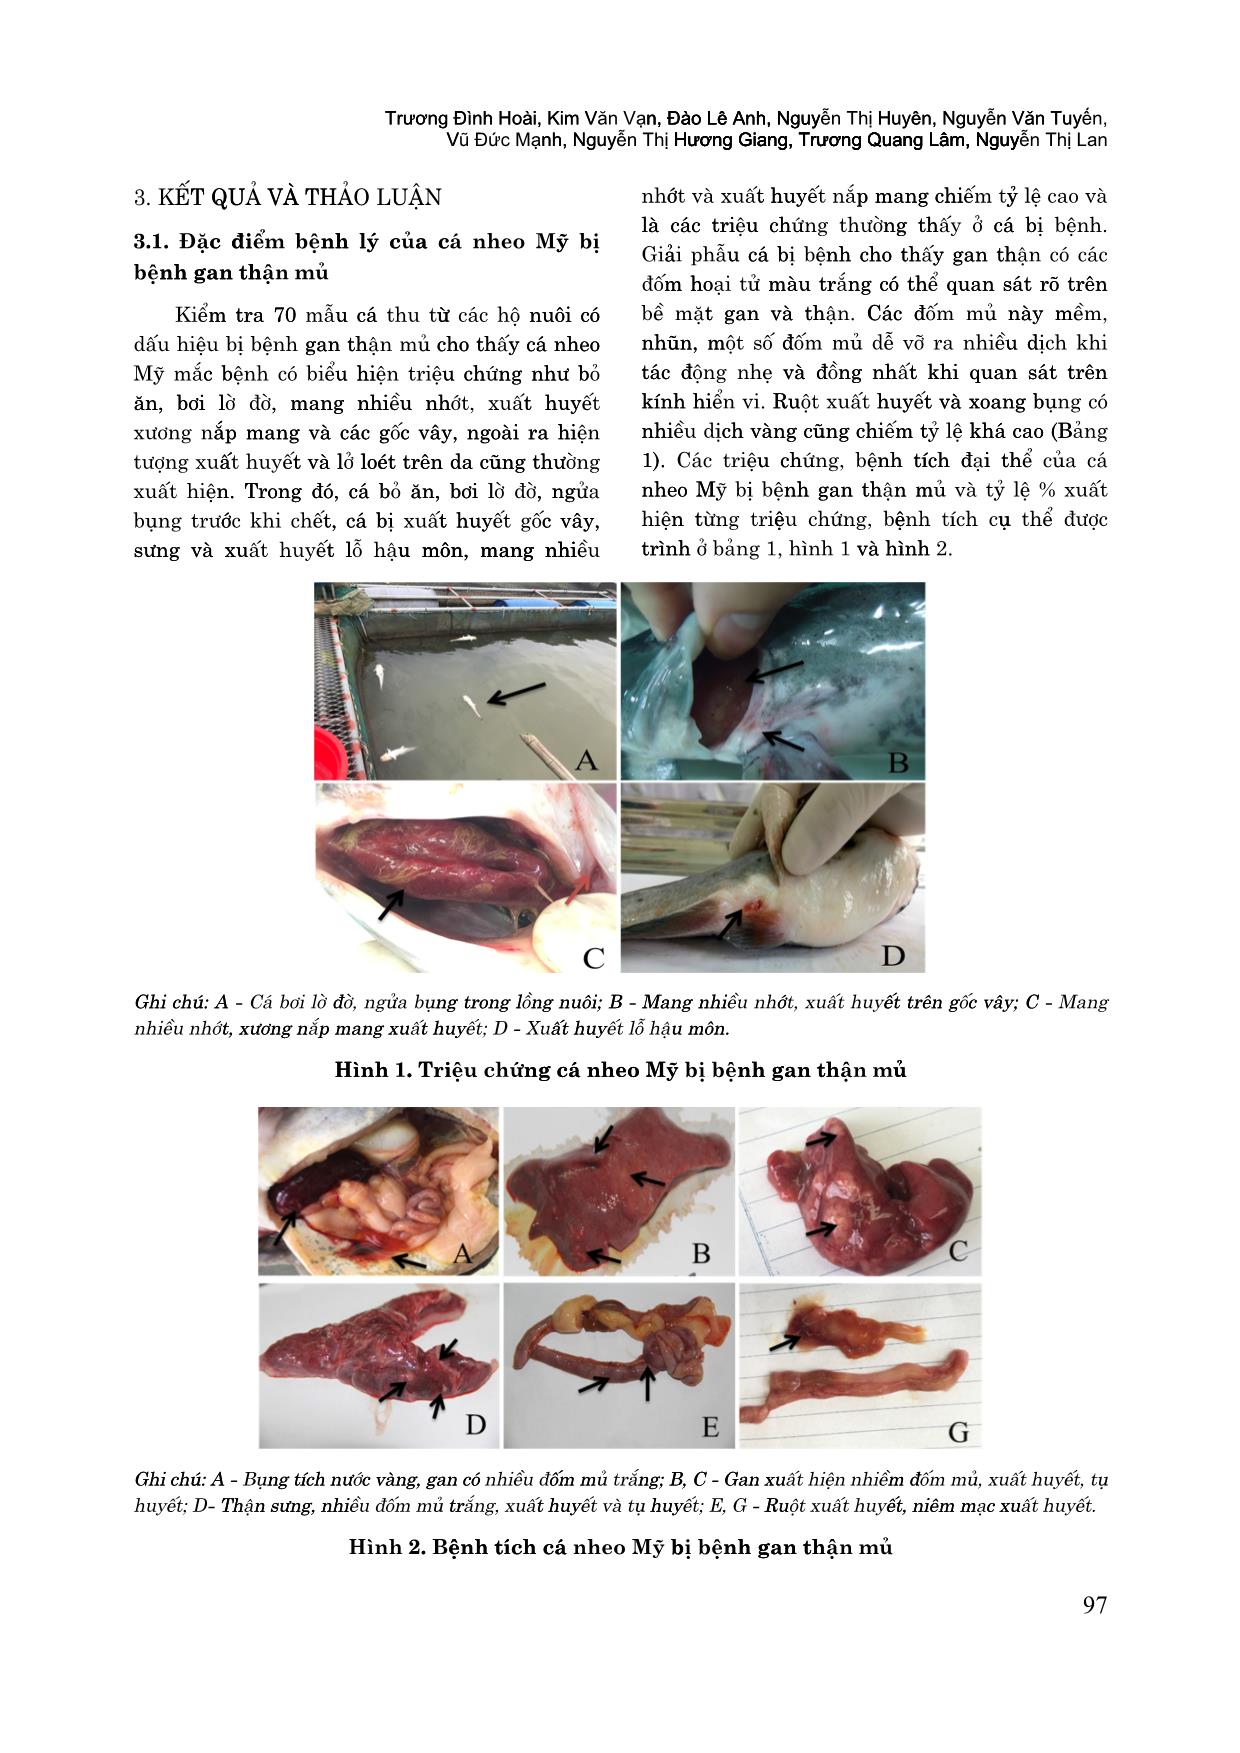 Đặc điểm bệnh lý và ứng dụng phương pháp PCR chẩn đoán bệnh gan thận mủ trên cá nheo Mỹ (Ictalurus punctatus) trang 4